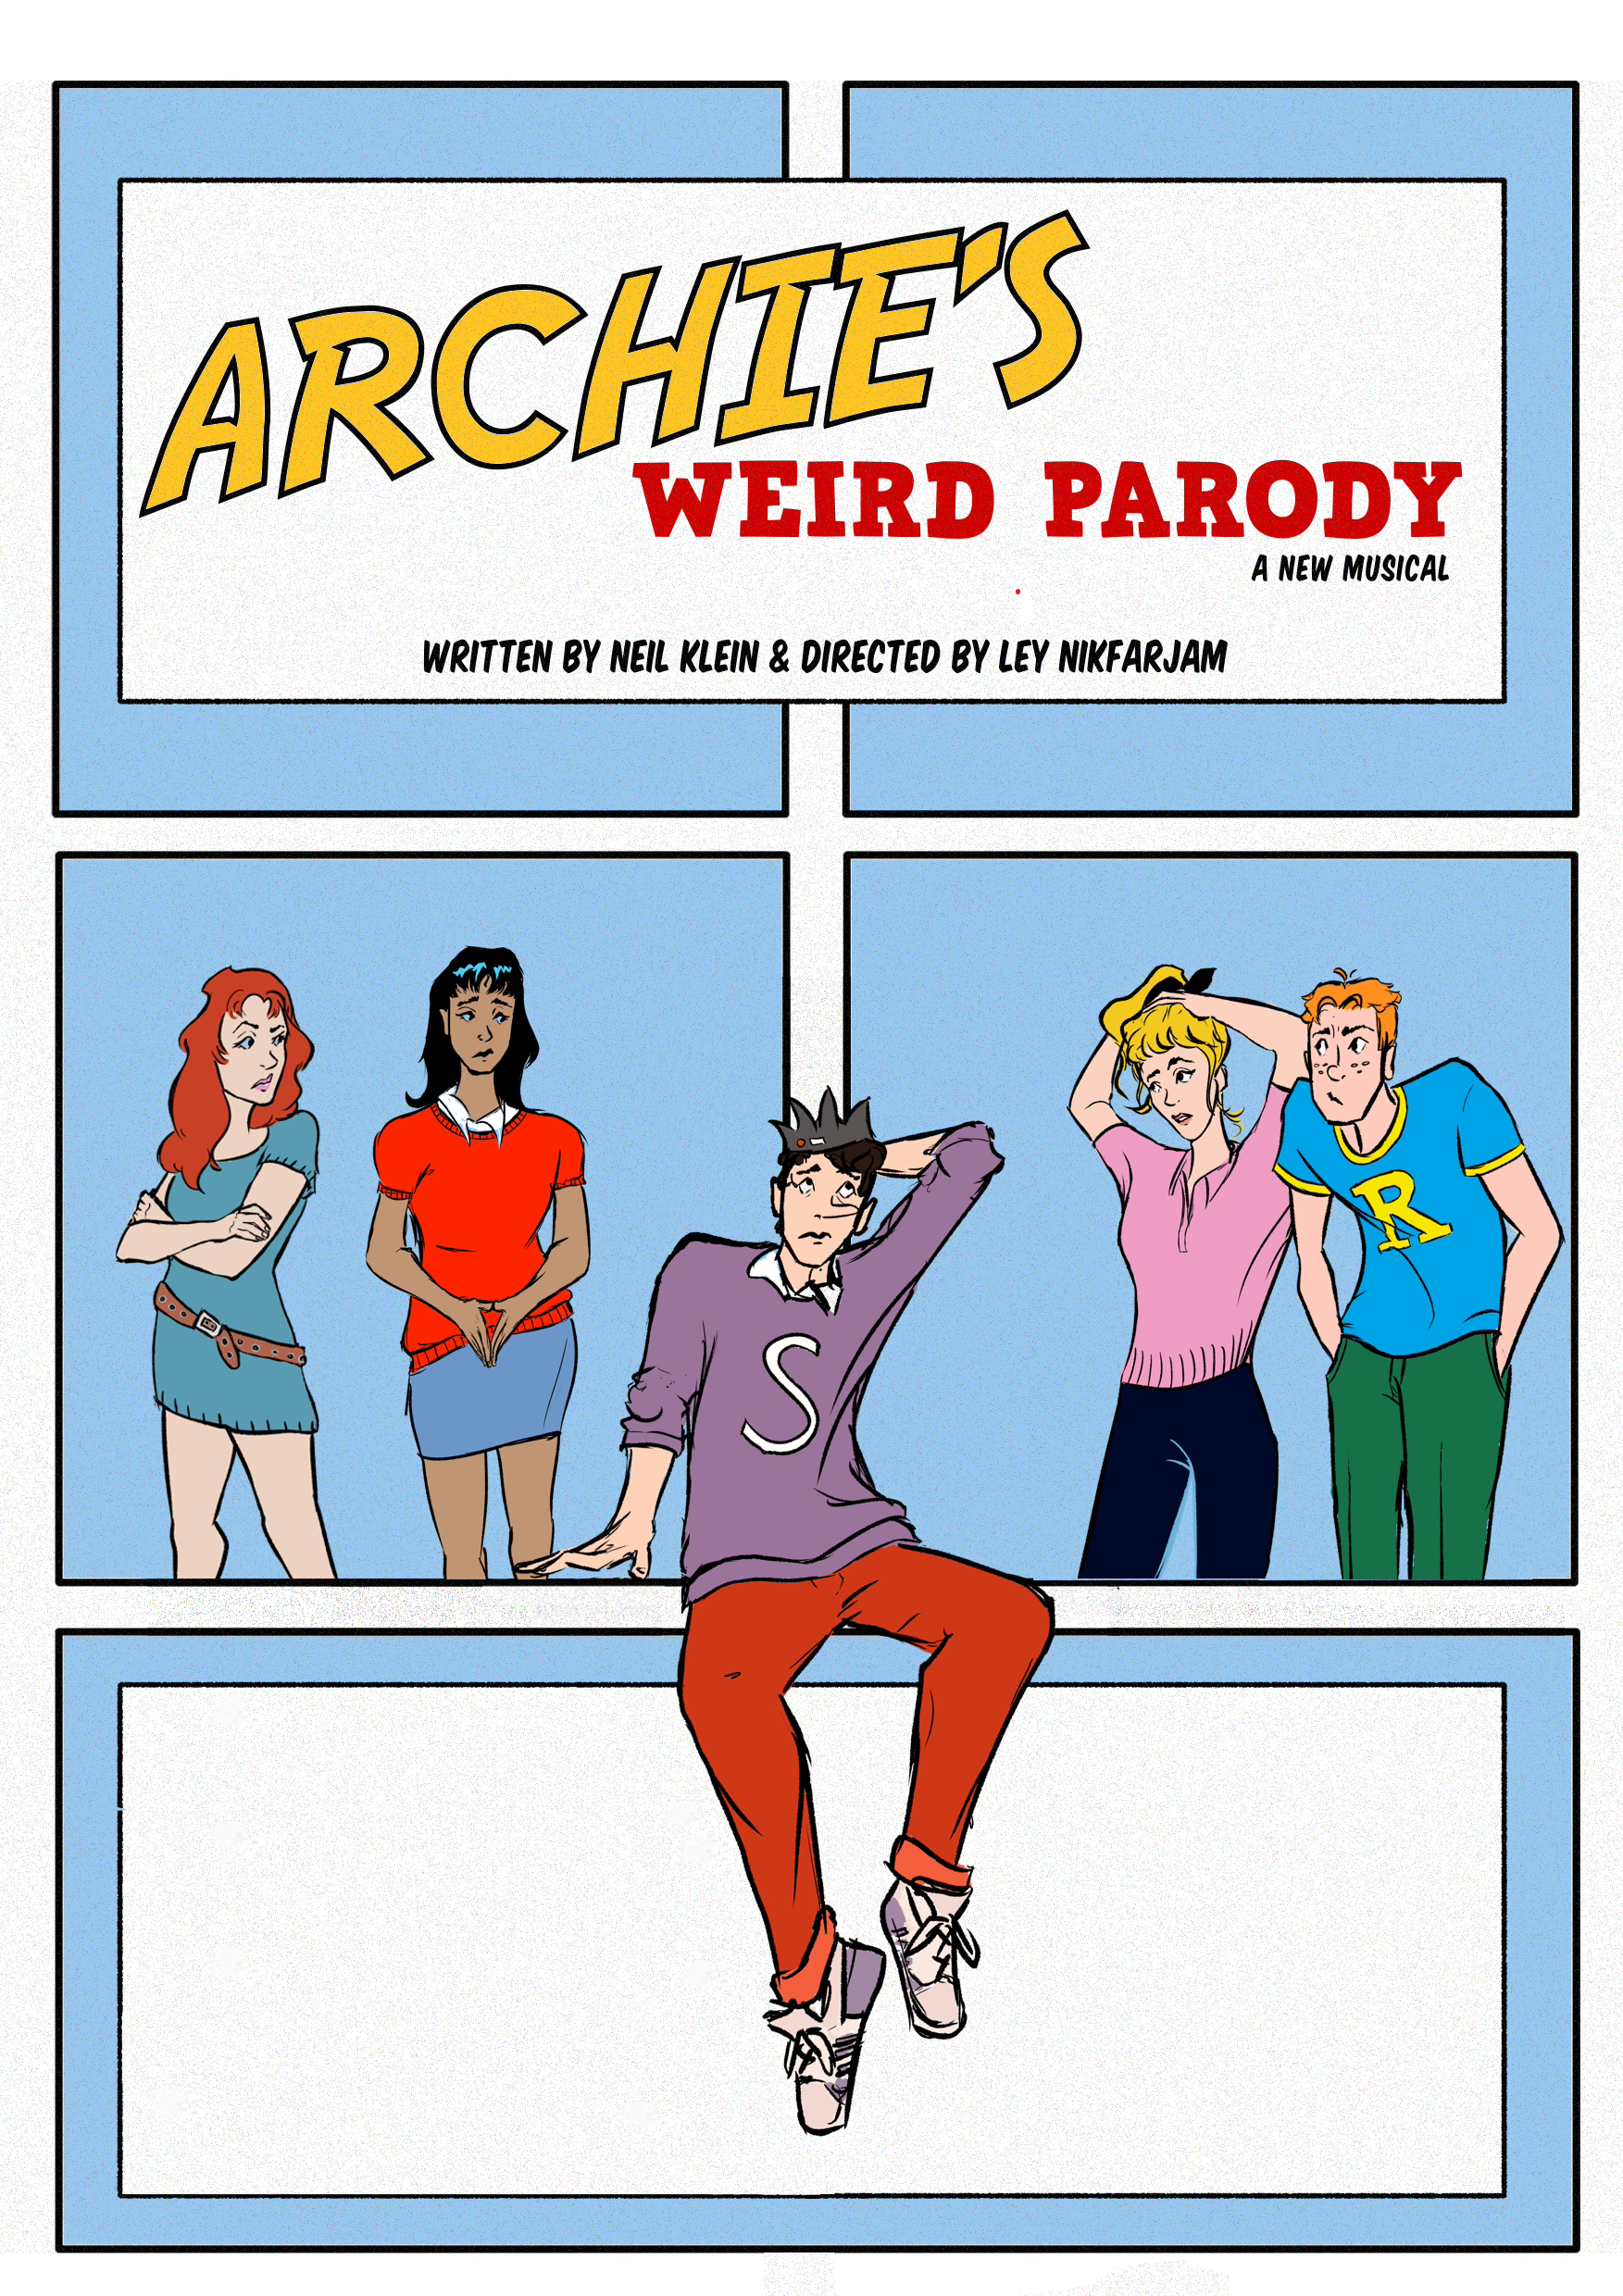 Archies weird parody